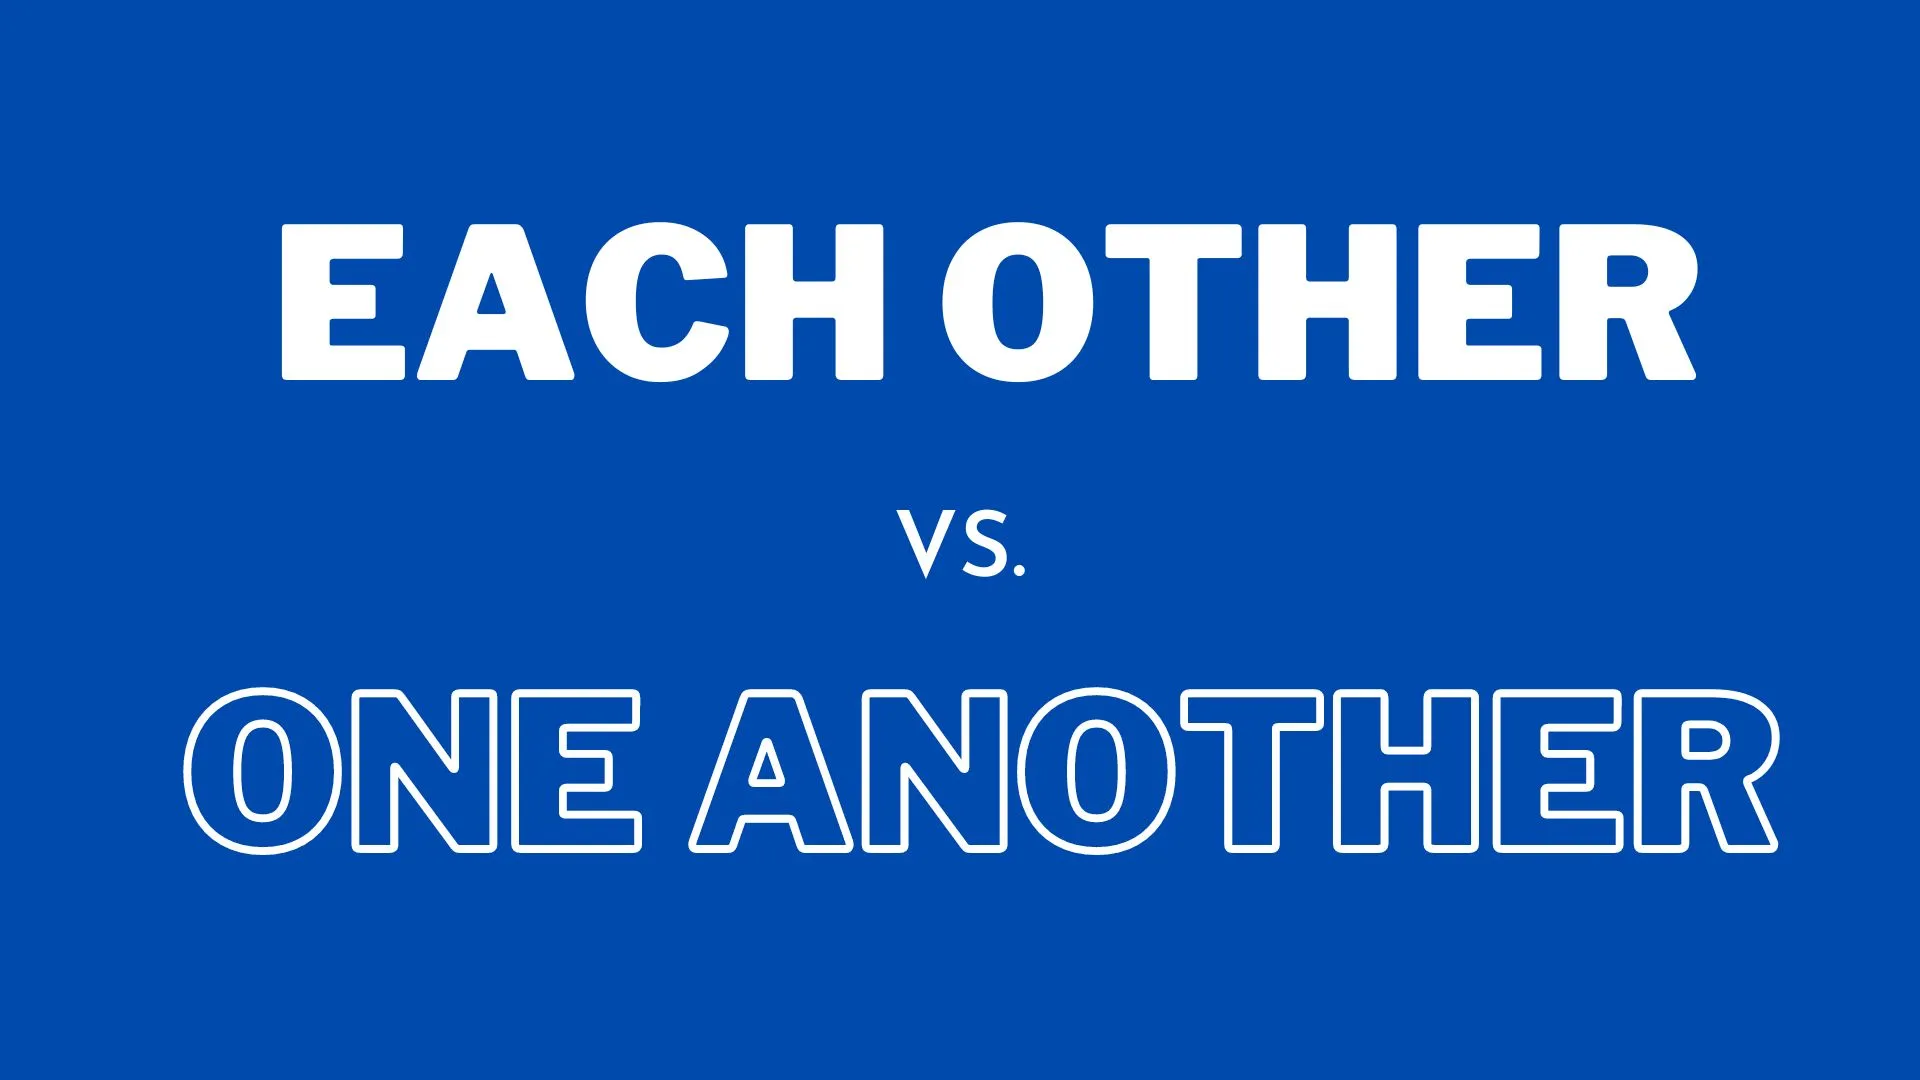 Ilustração mostrando a diferença entre "each other" e "one another" na gramática inglesa para professores e alunos de inglês.